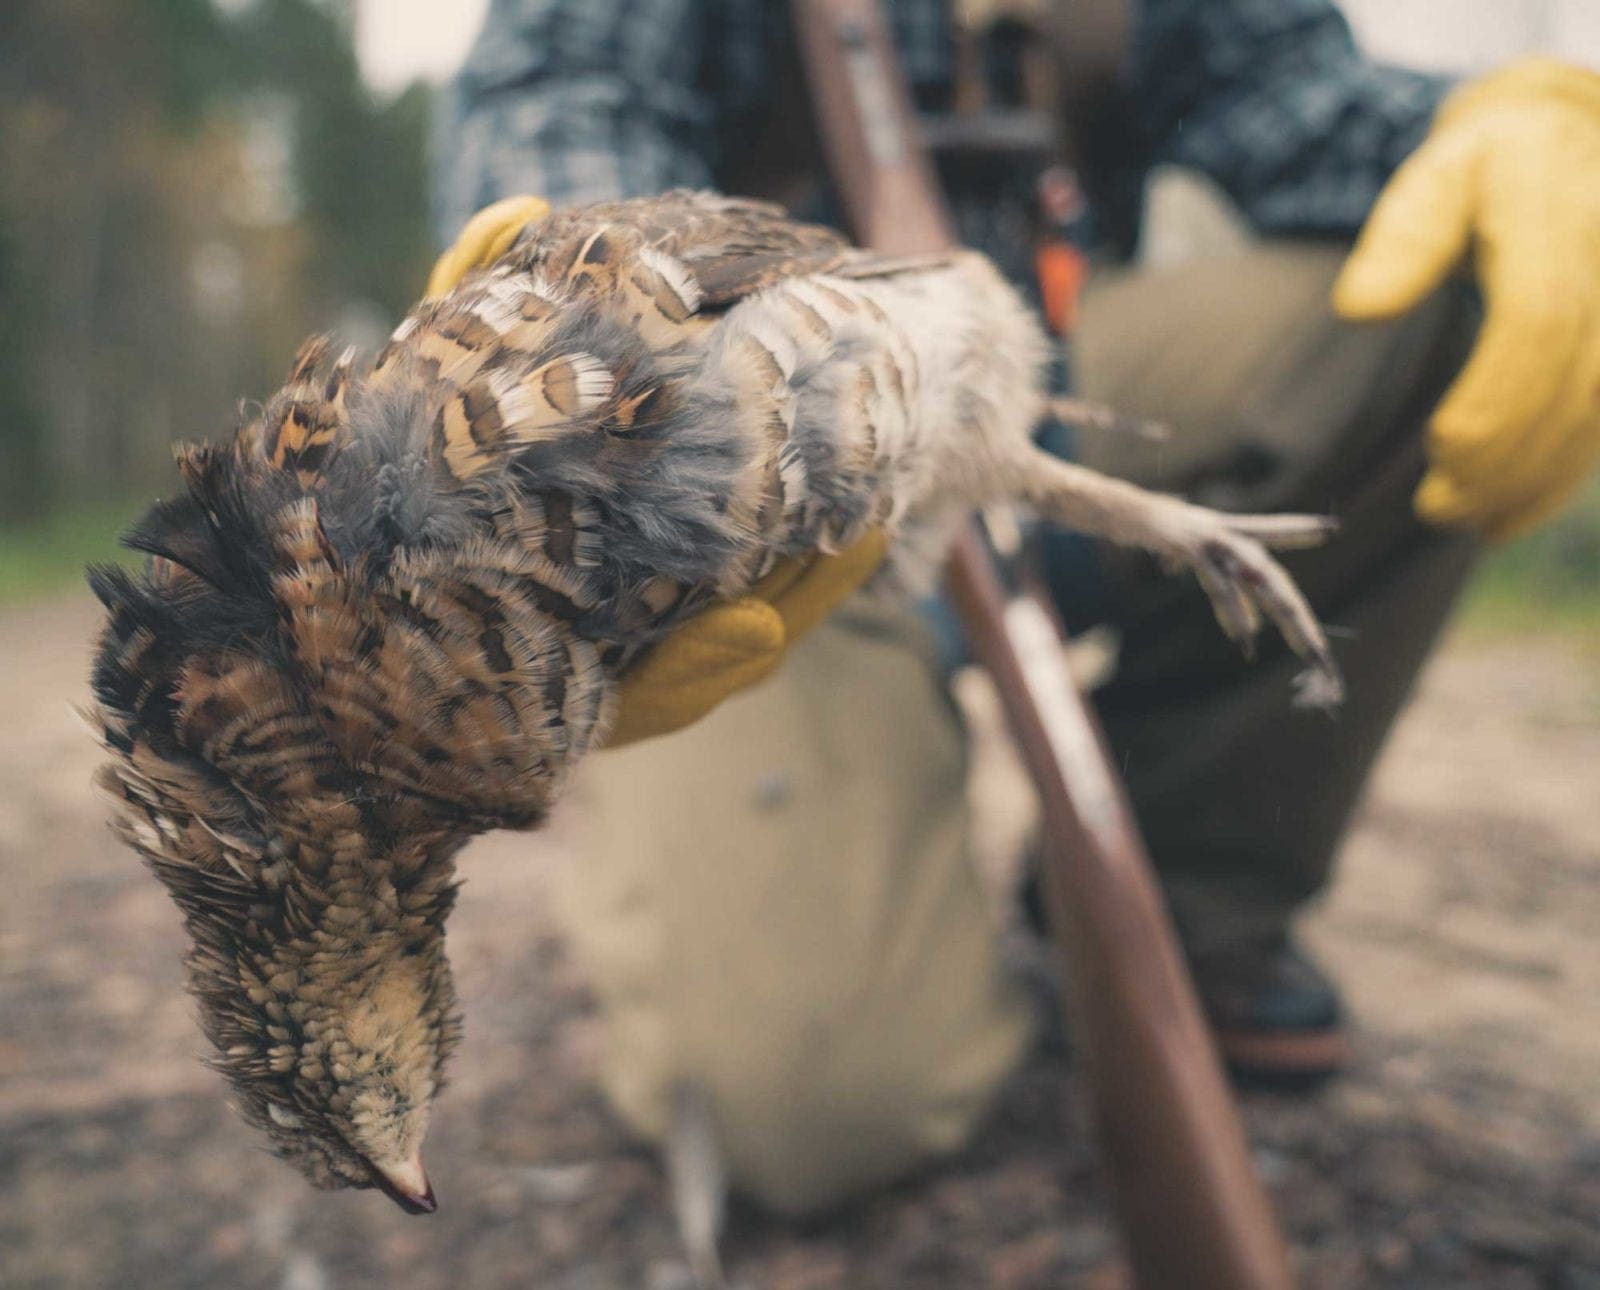 A ruffed grouse hunter holds a bird.